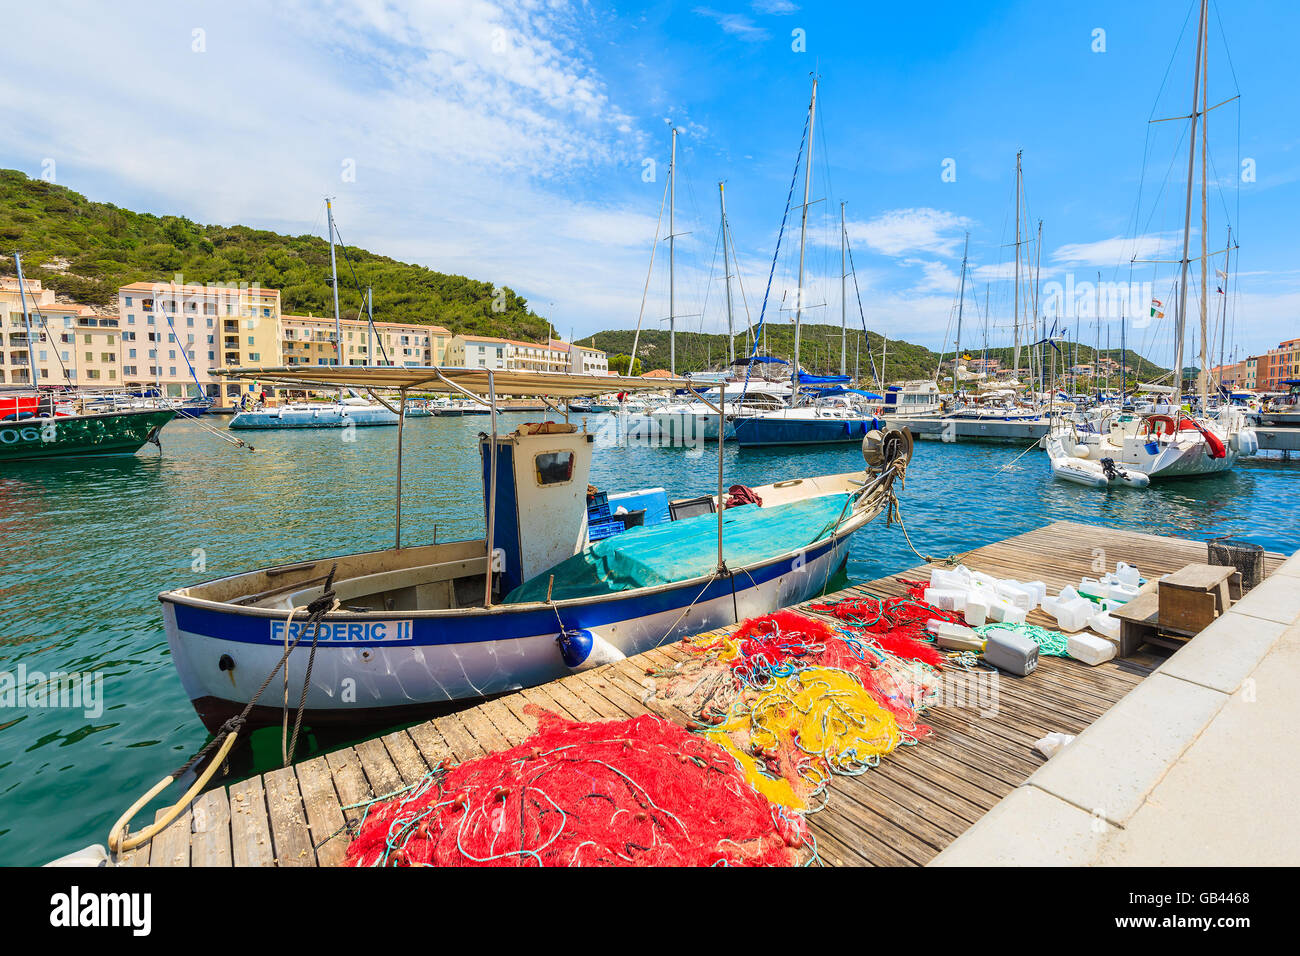 BONIFACIO, CORSICA - giu 23, 2015: antica e tipica barca da pesca nel porto di Bonifacio. Questa città è famosa per la cittadella medioevale di un Foto Stock